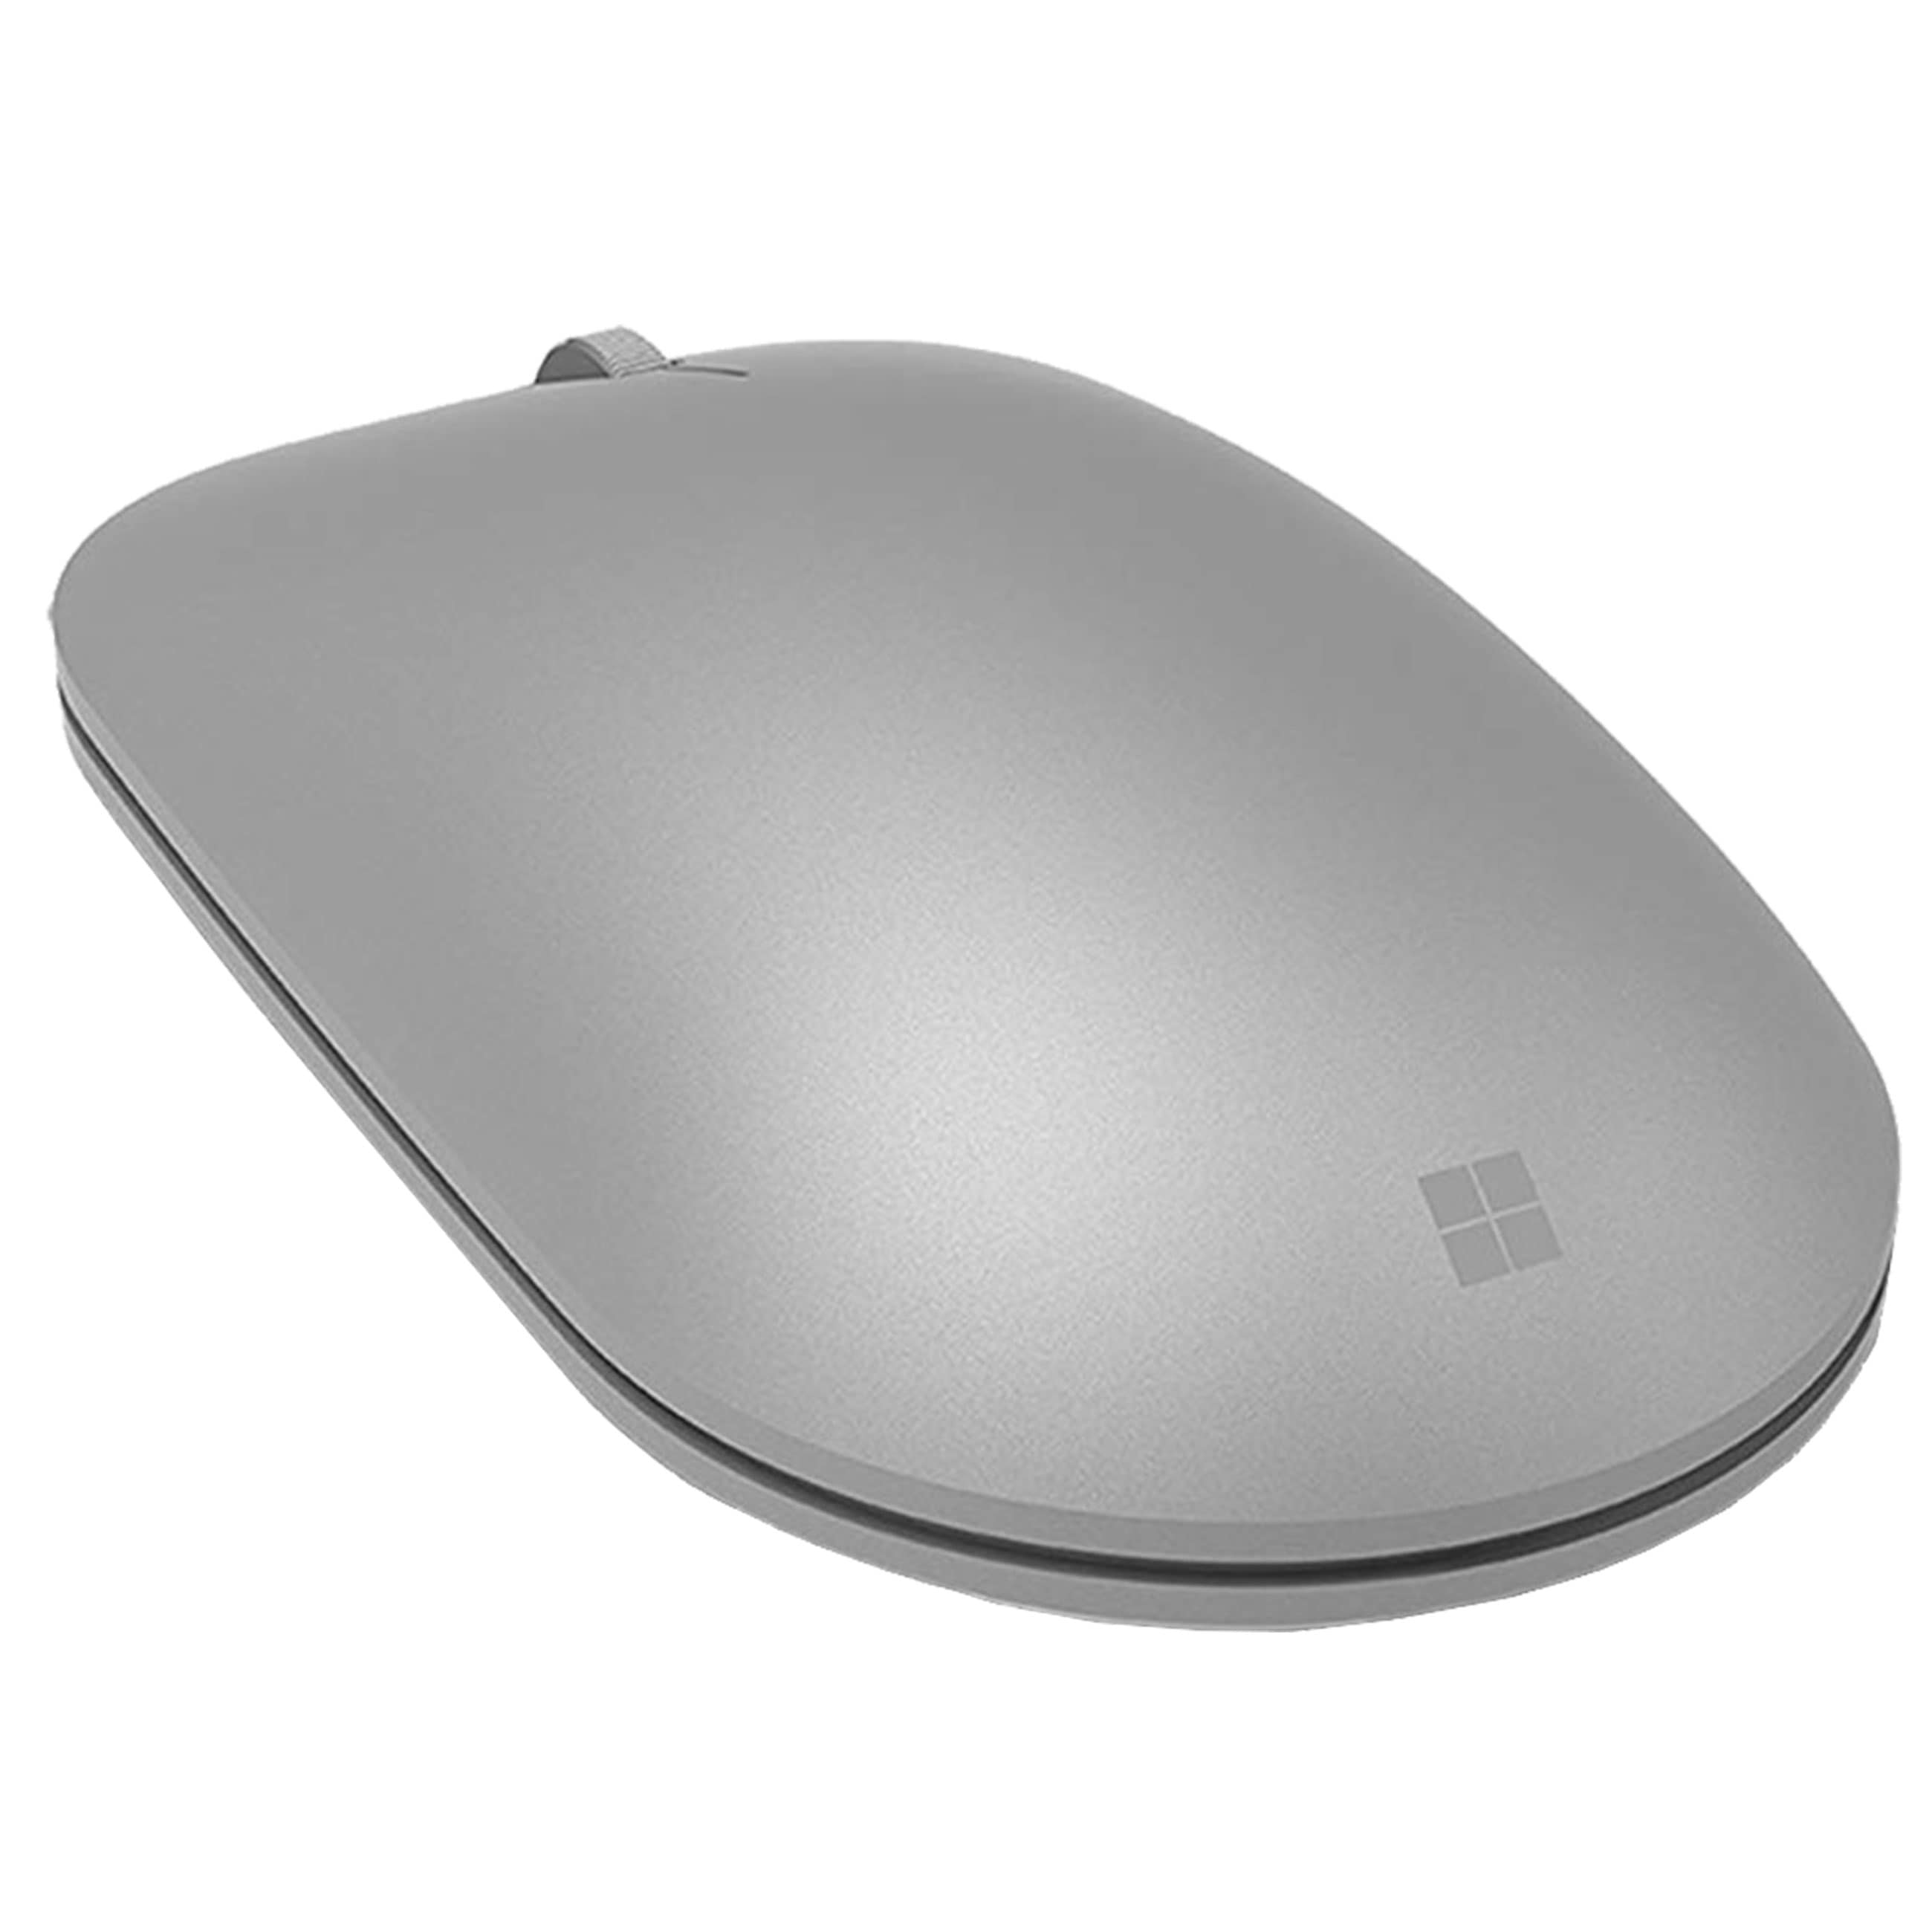 Microsoft Surface Maus